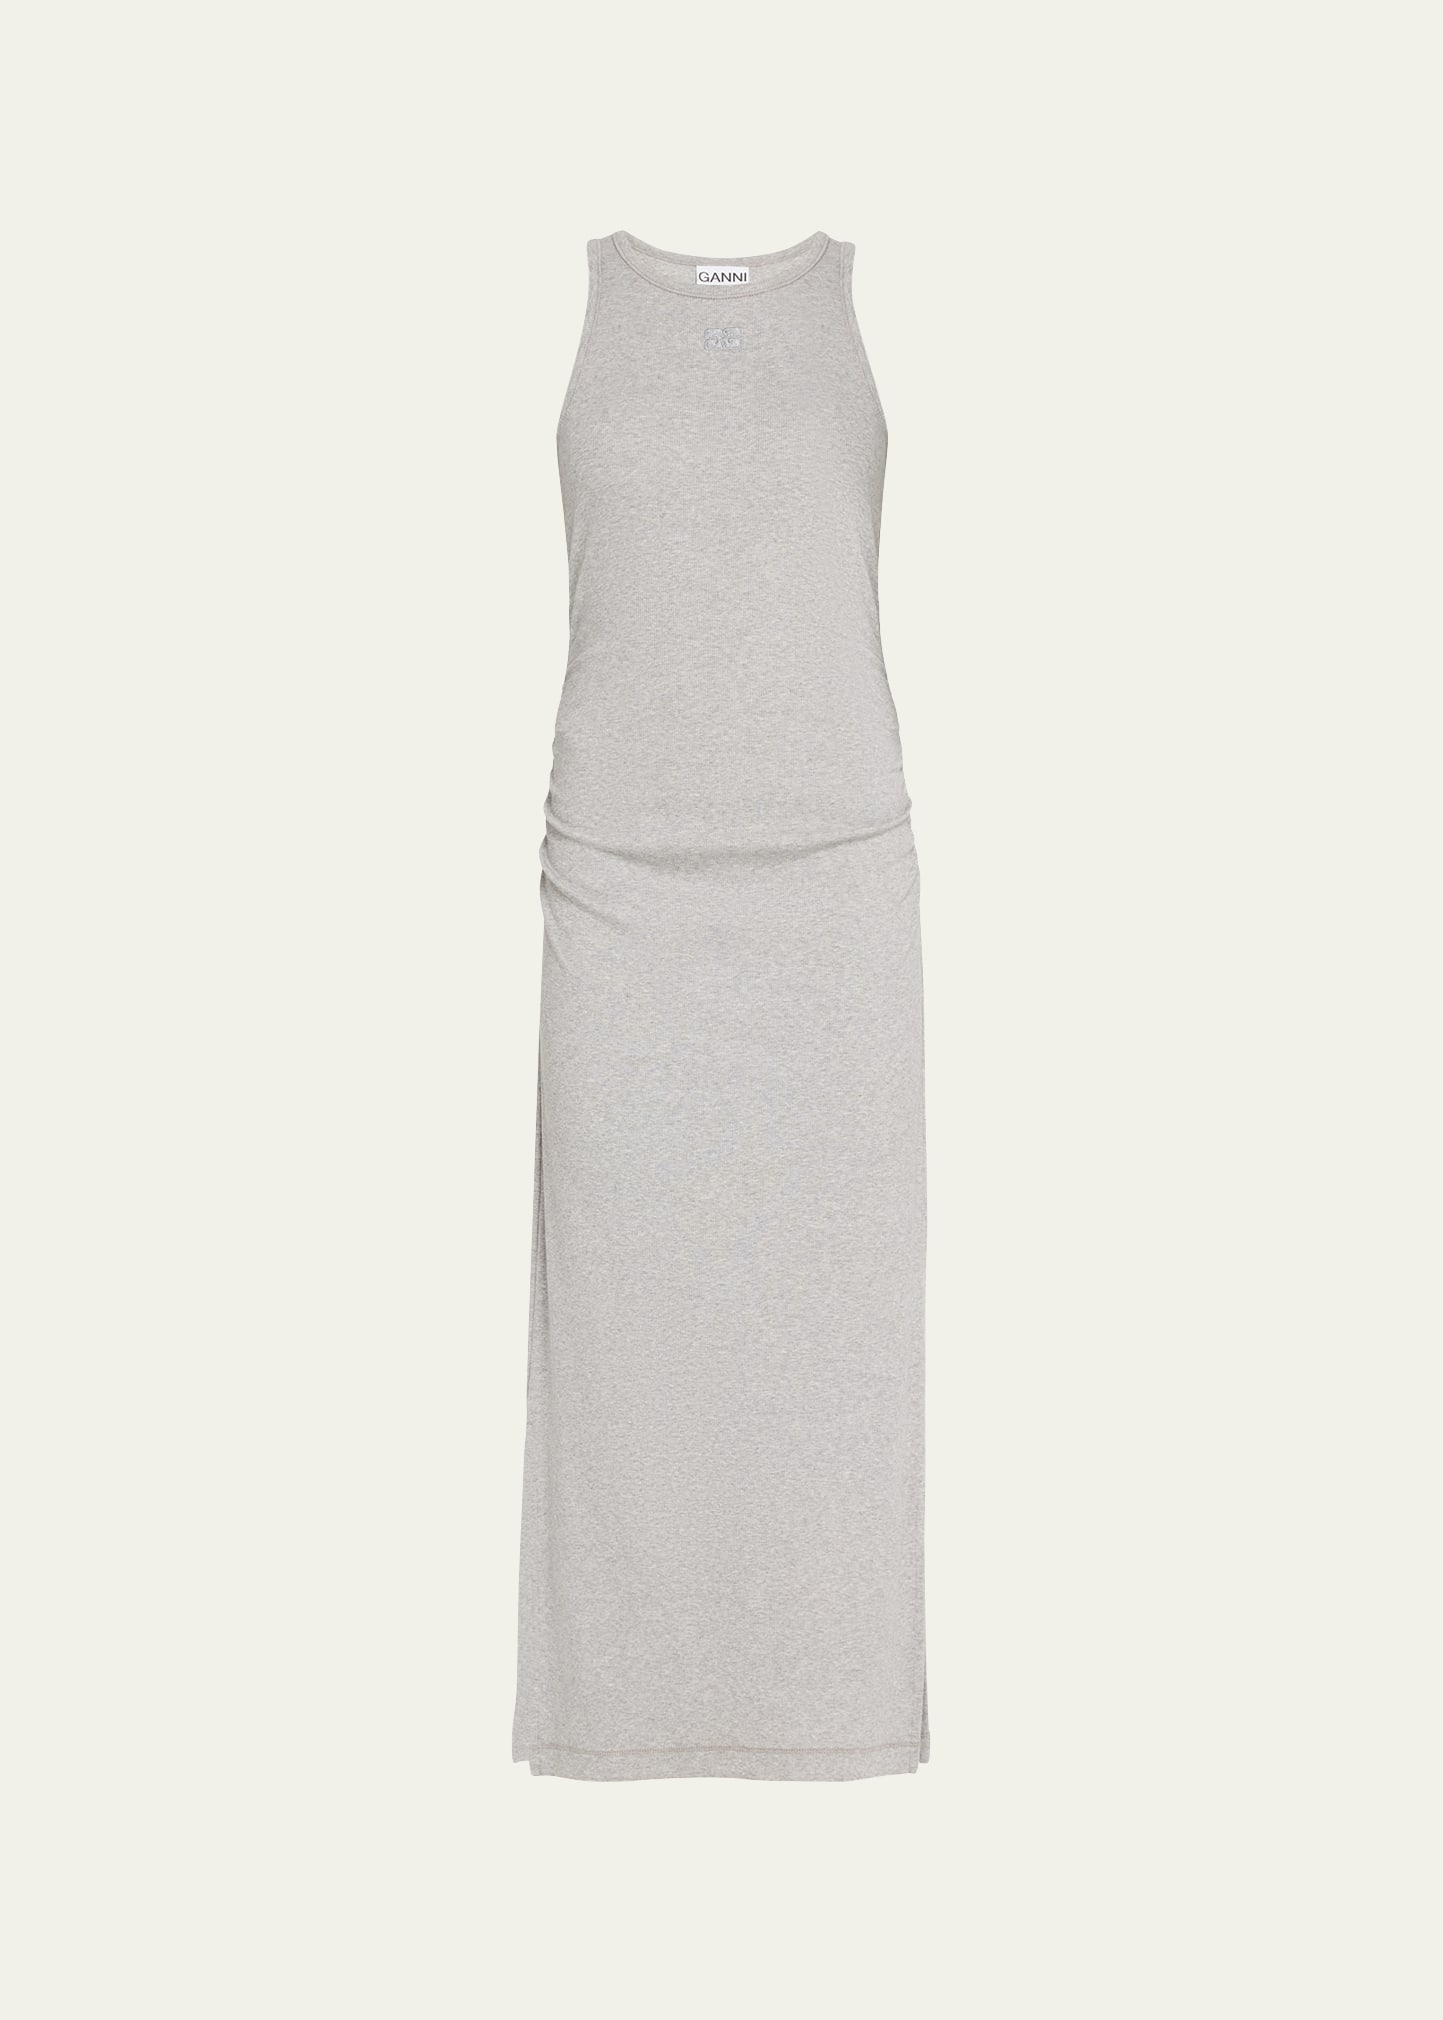 Ganni Organic Cotton Rib Long Tank Dress In Gray